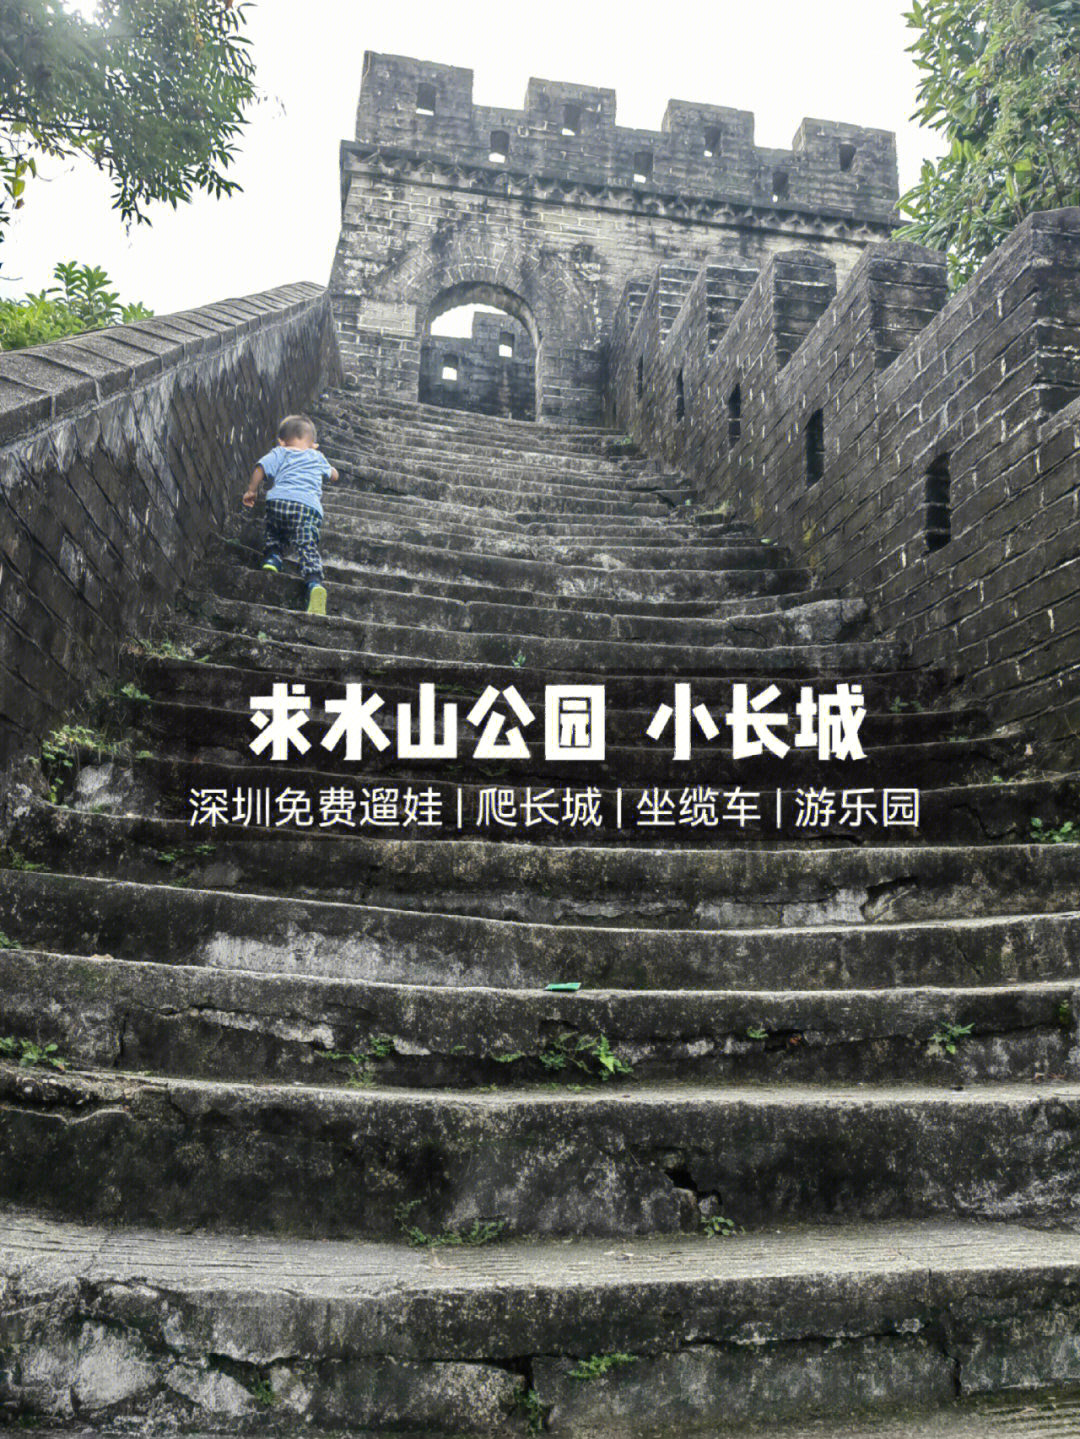 深圳免费遛娃求水山公园爬小长城坐缆车游